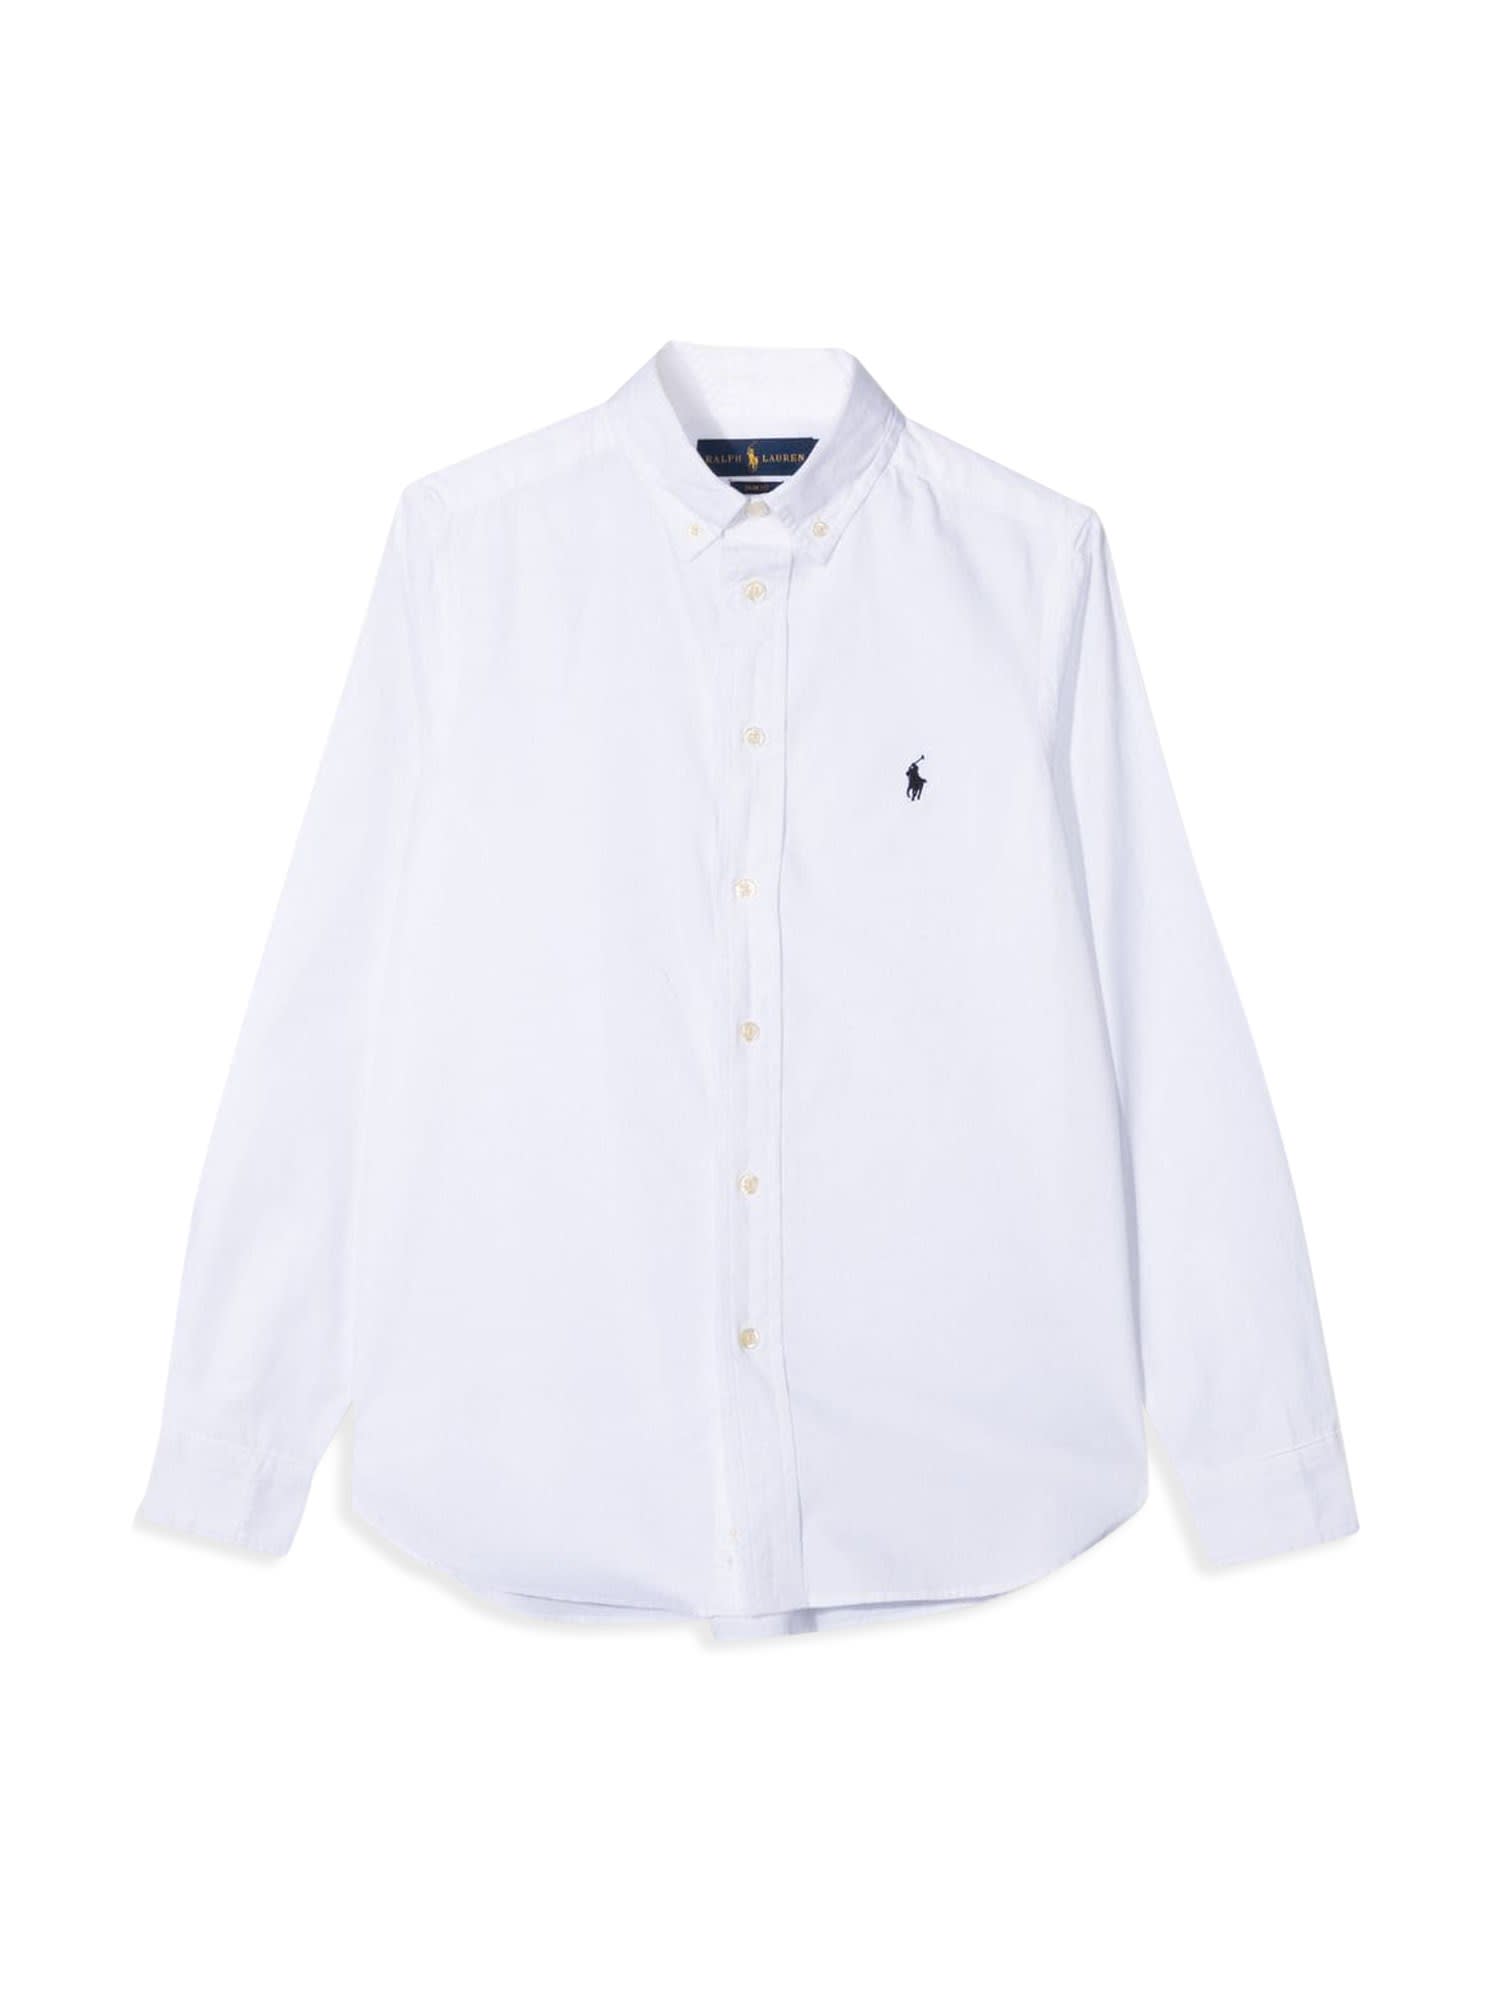 Polo Ralph Lauren M/l Slim Fit Shirt